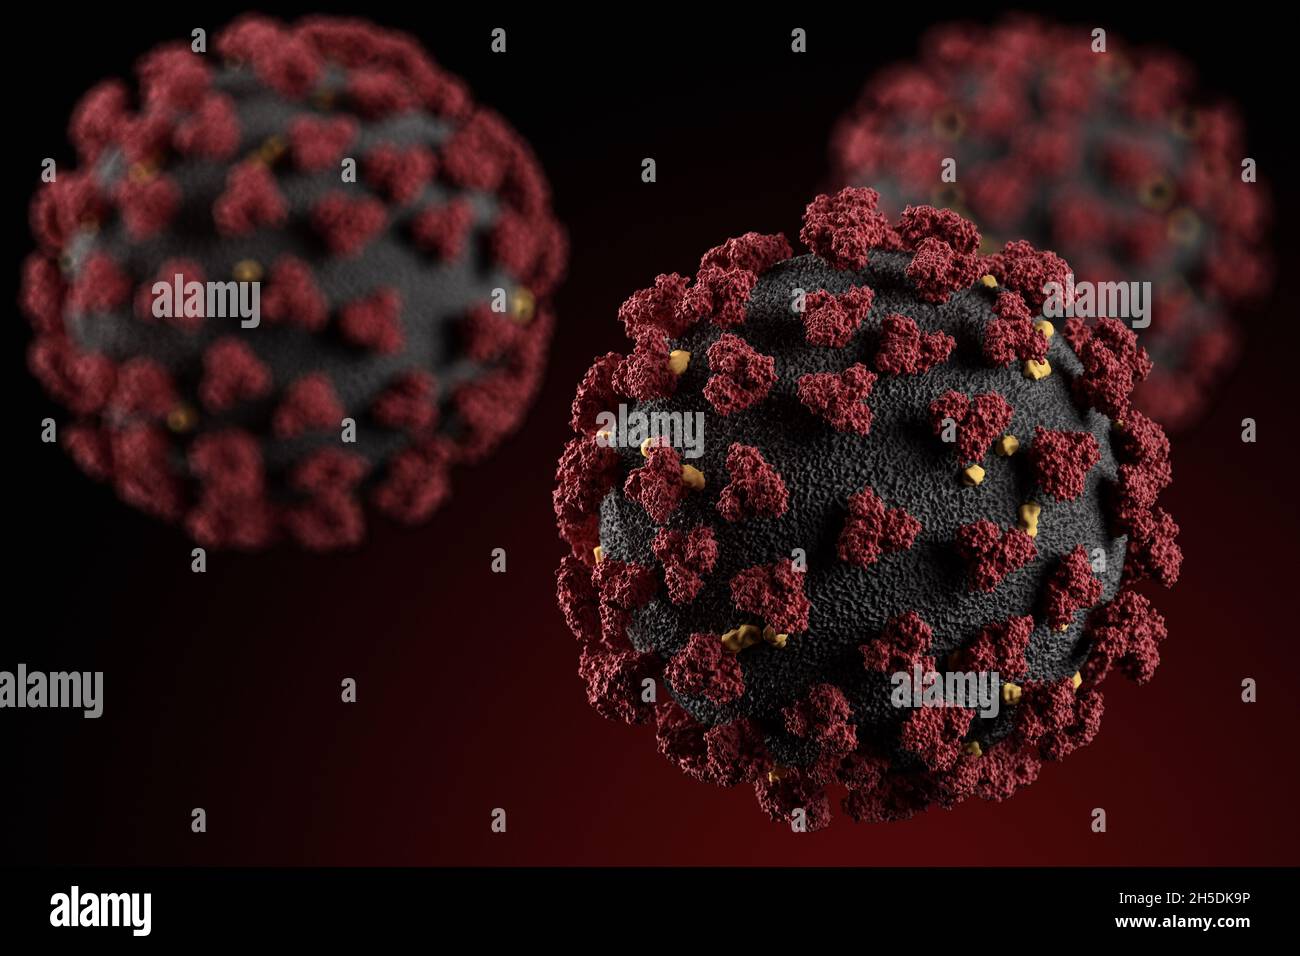 Visualizzazione del virus SARS-COV-2 (COVID19). Illustrazione di un patogeno del coronavirus che galleggia in un ambiente cellulare. Esame microscopico Foto Stock